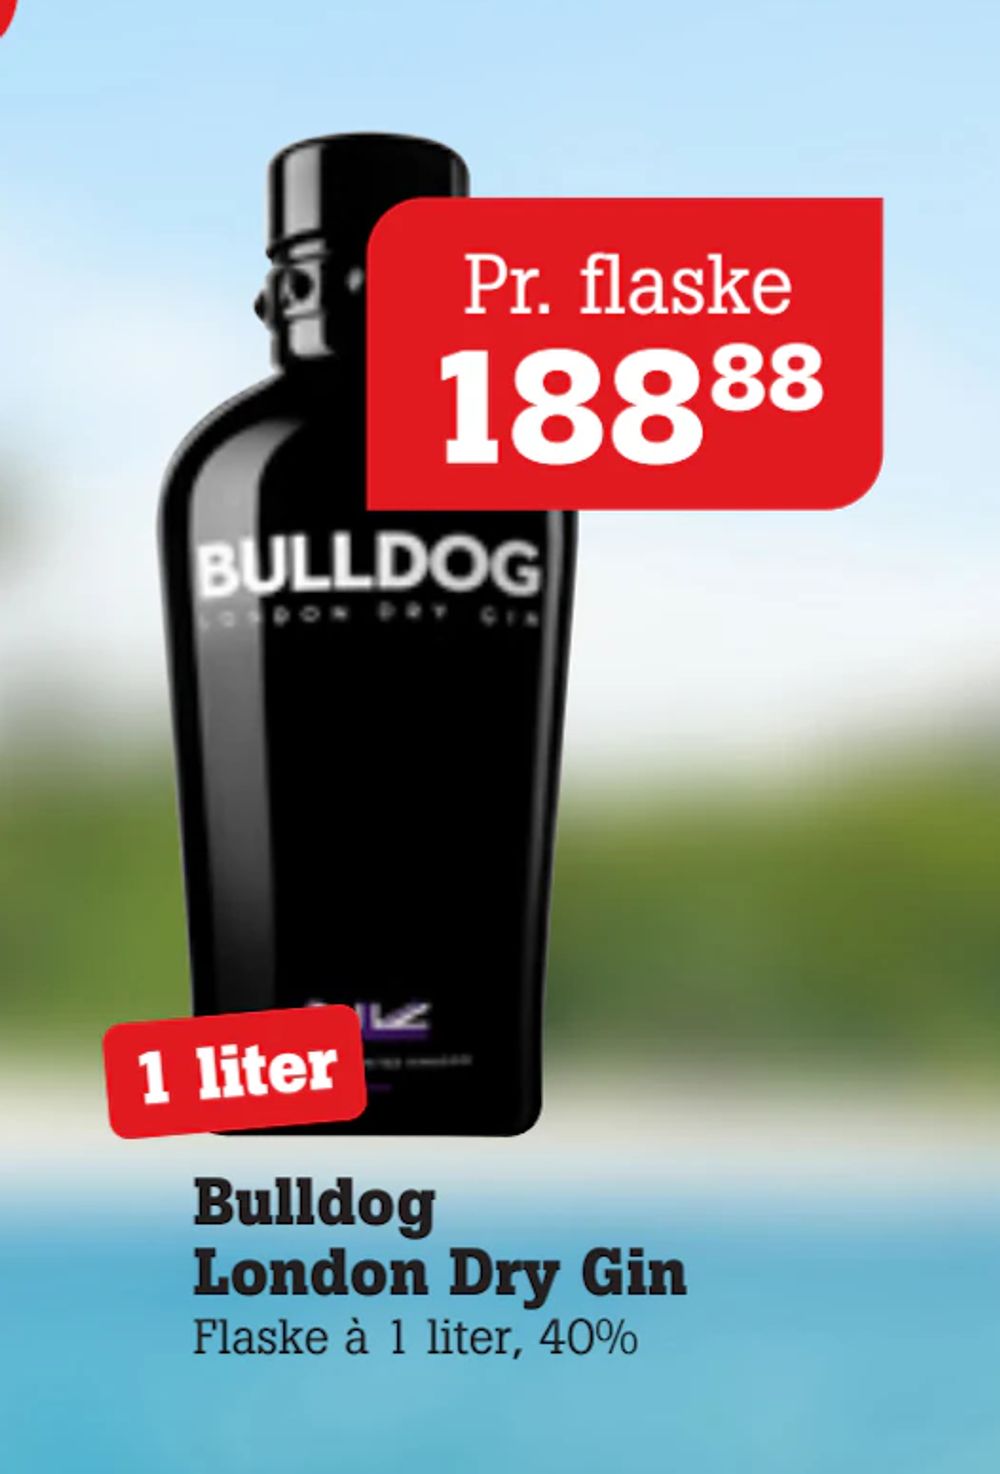 Tilbud på Bulldog London Dry Gin fra Poetzsch Padborg til 188,88 kr.